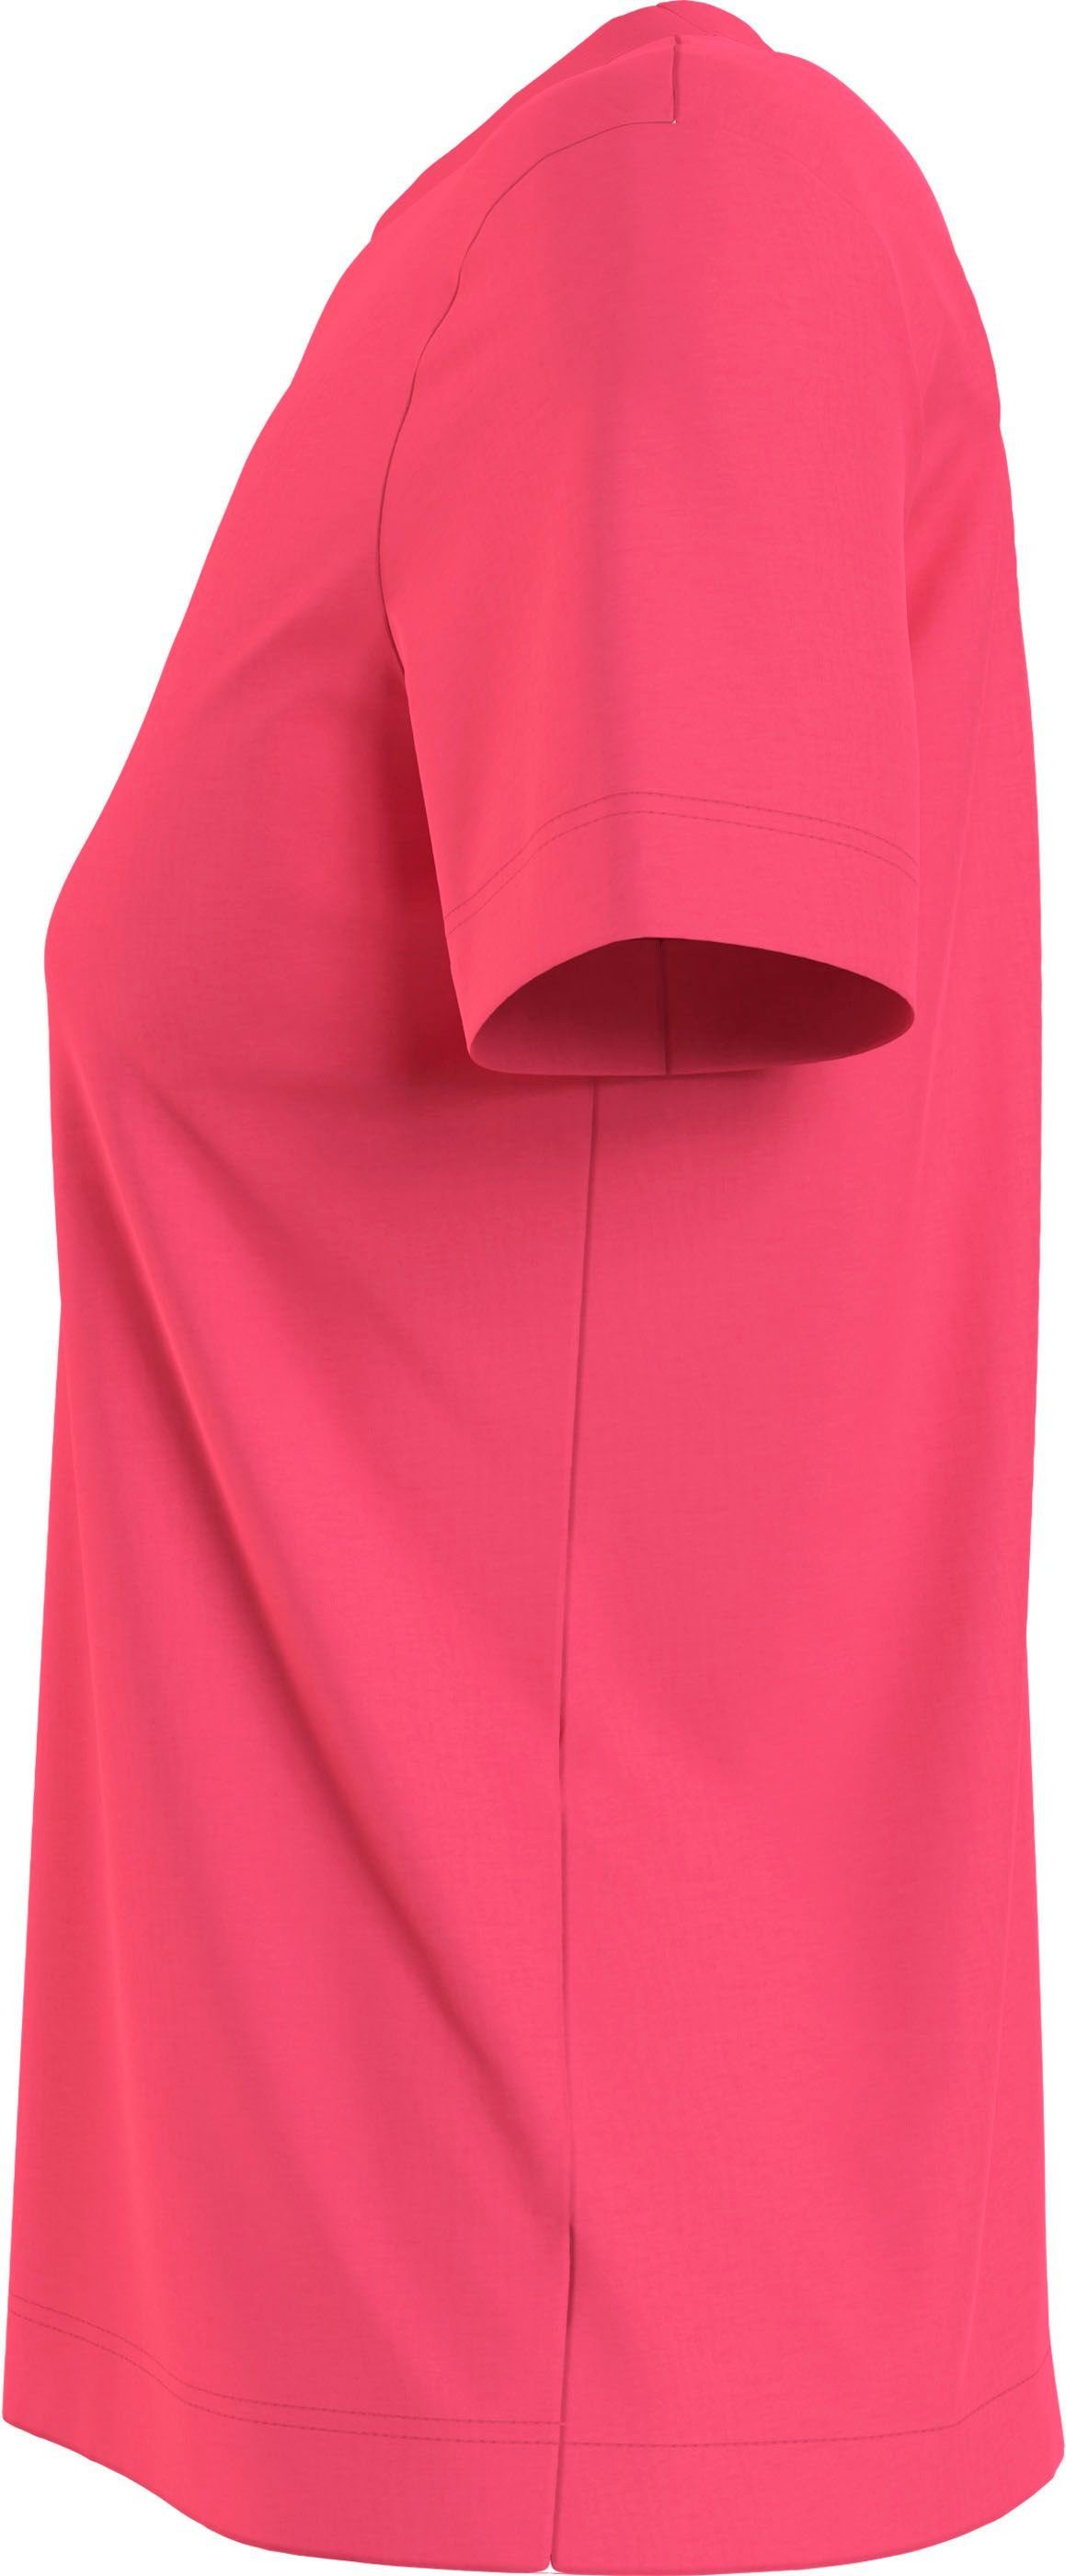 Calvin Klein Jeans Baumwolle aus reiner pink T-Shirt